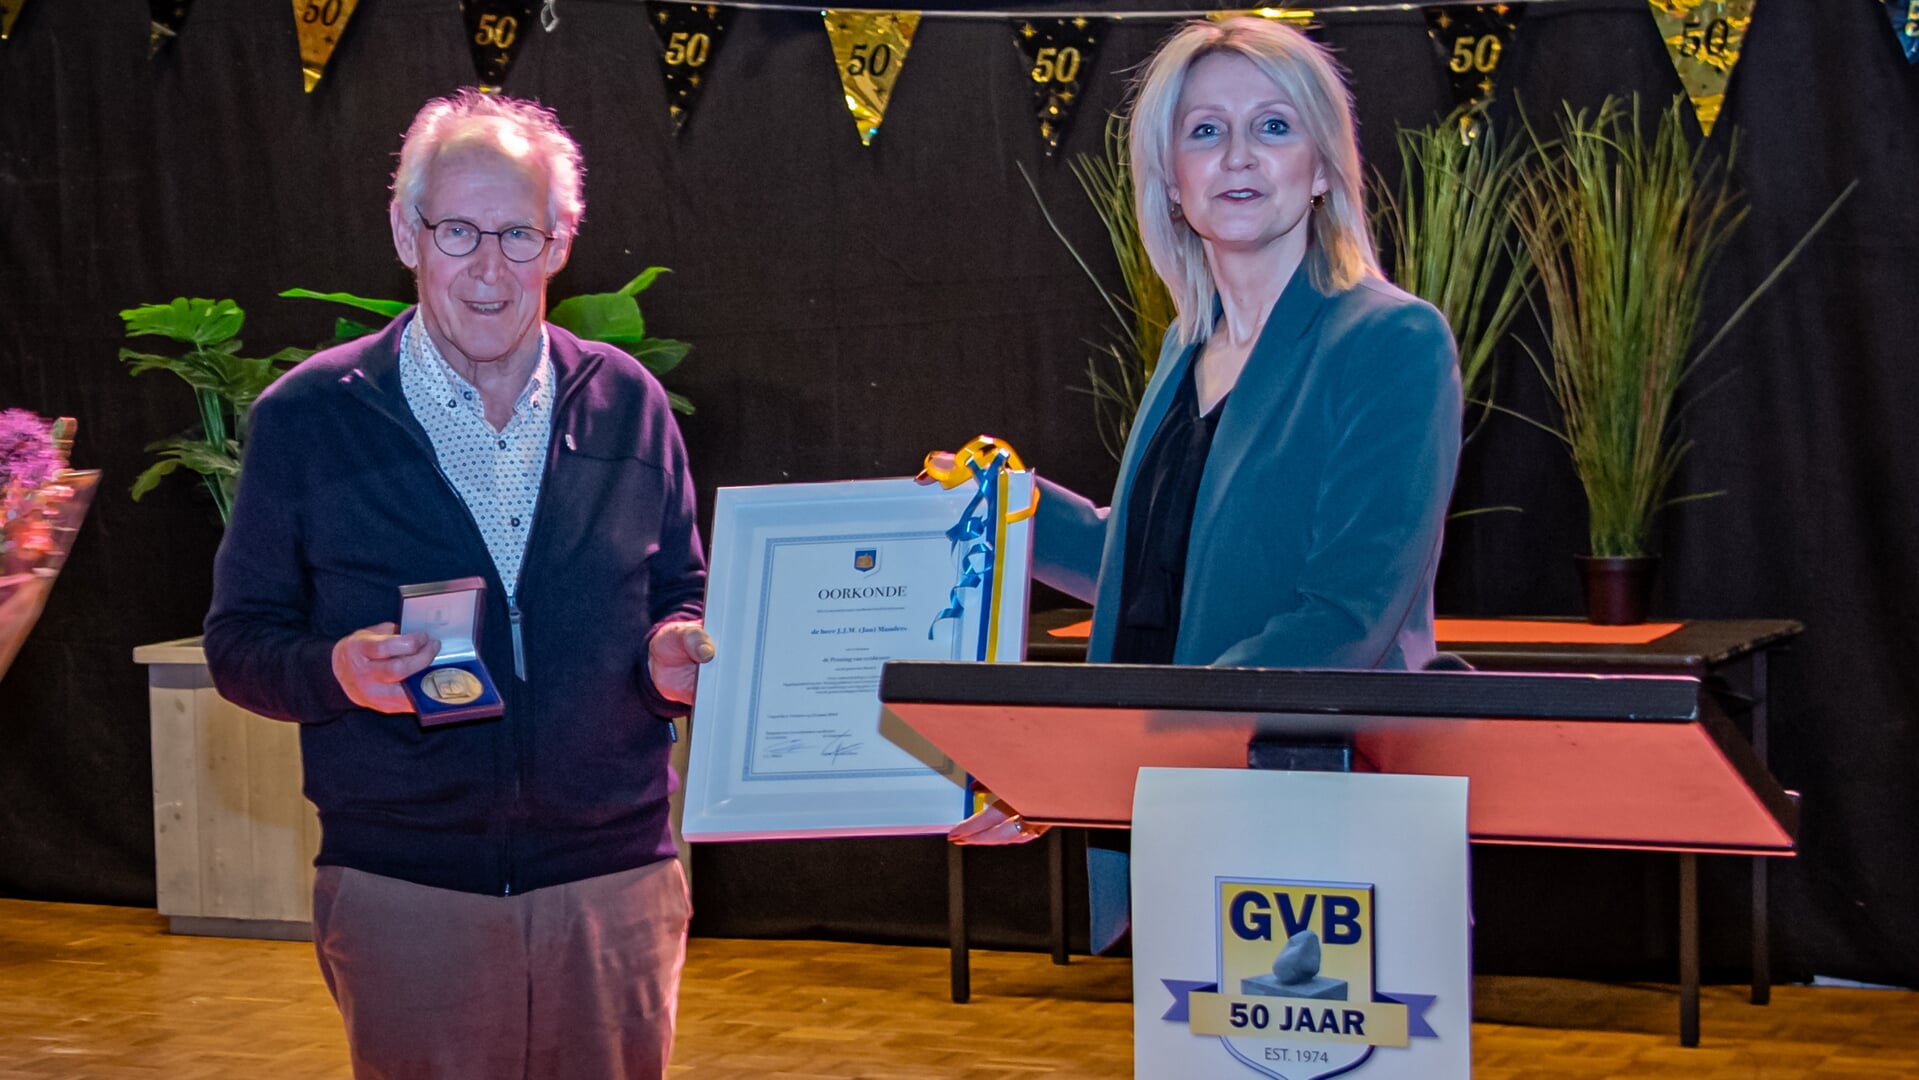 Burgemeester Caroline van den Elsen reikt de penning van verdienste uit aan Jan Manders.